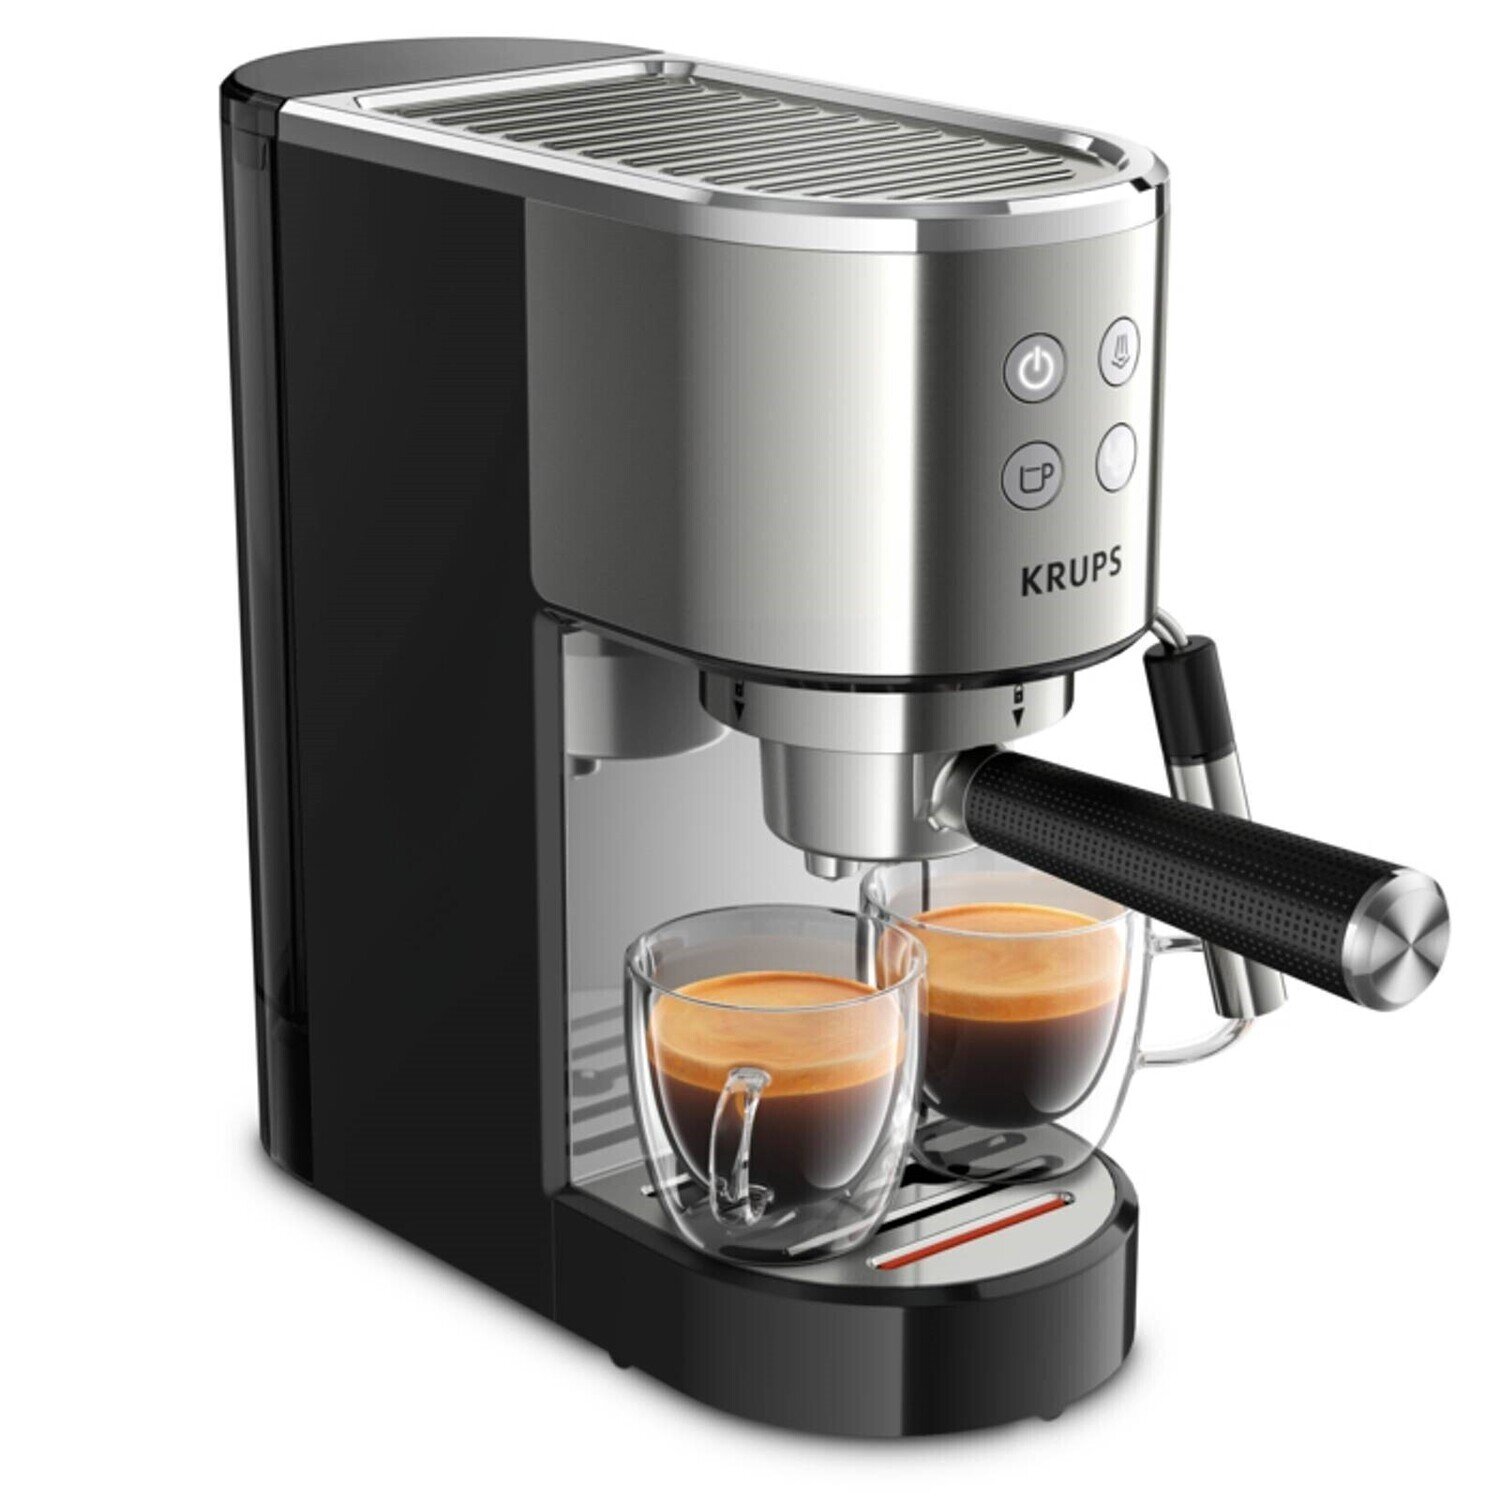 Boutique Vlan - Krups - Machine Espresso semi-automatique